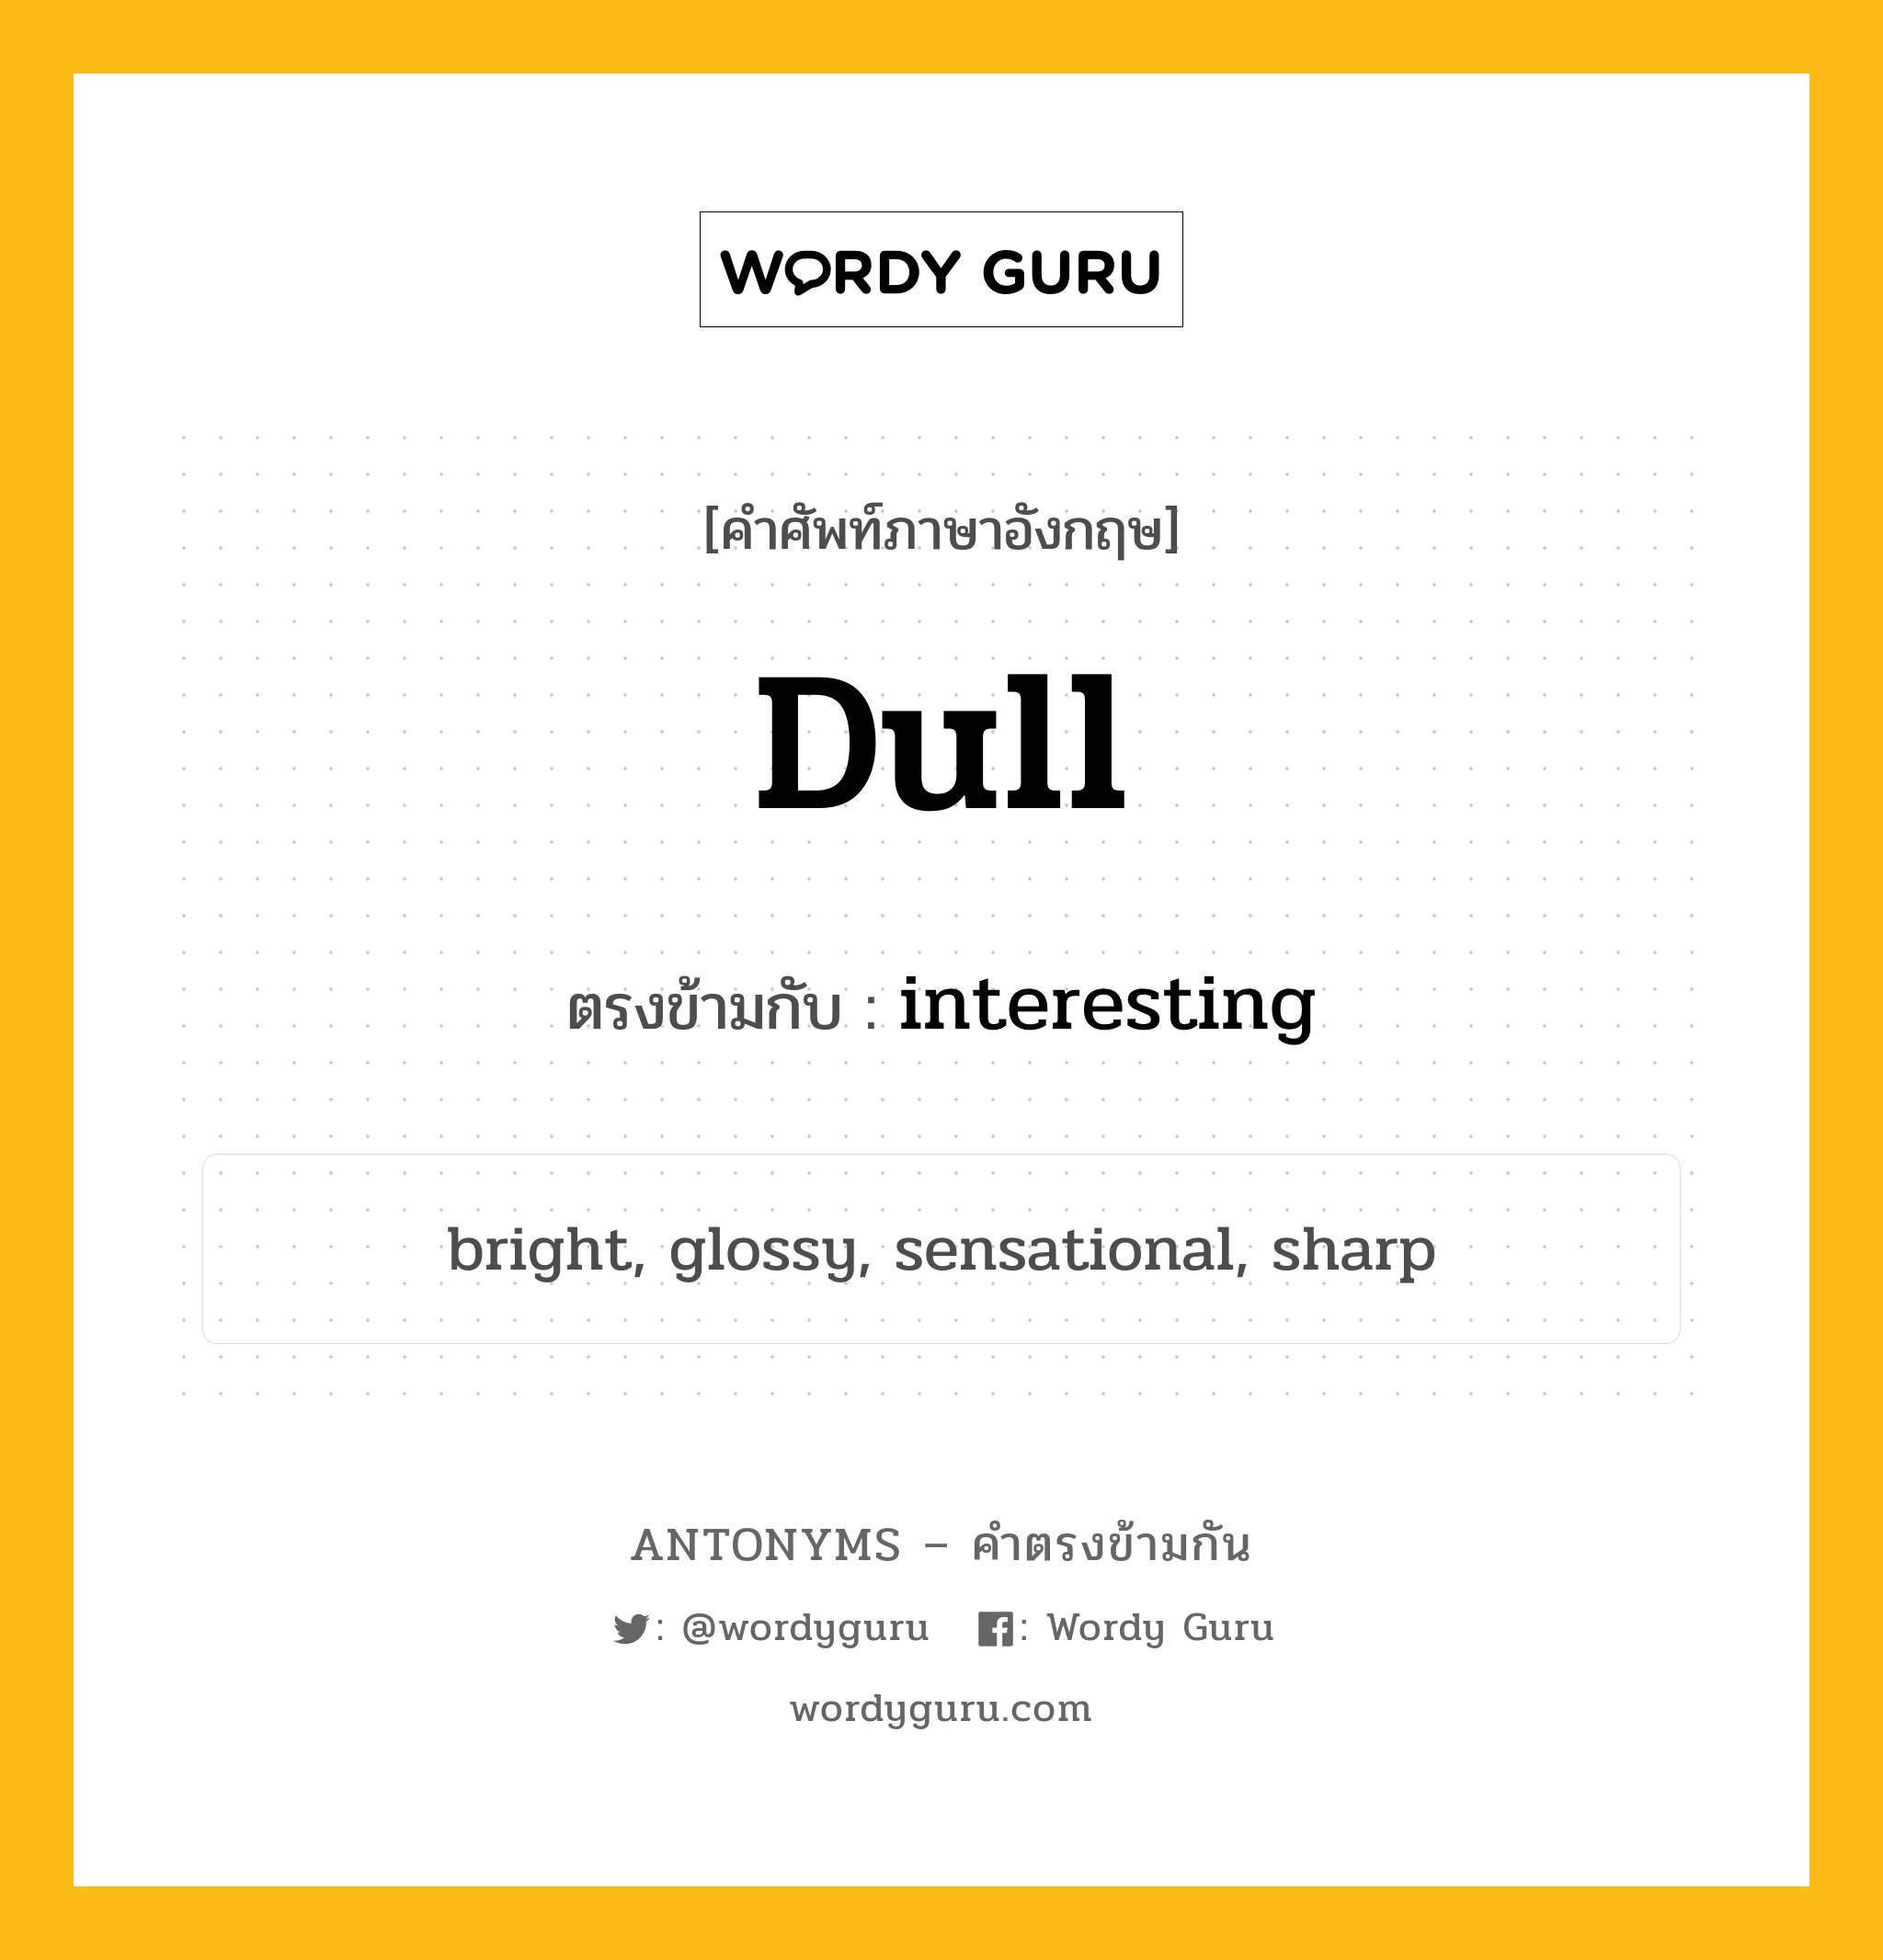 dull เป็นคำตรงข้ามกับคำไหนบ้าง?, คำศัพท์ภาษาอังกฤษที่มีความหมายตรงข้ามกัน dull ตรงข้ามกับ interesting หมวด interesting